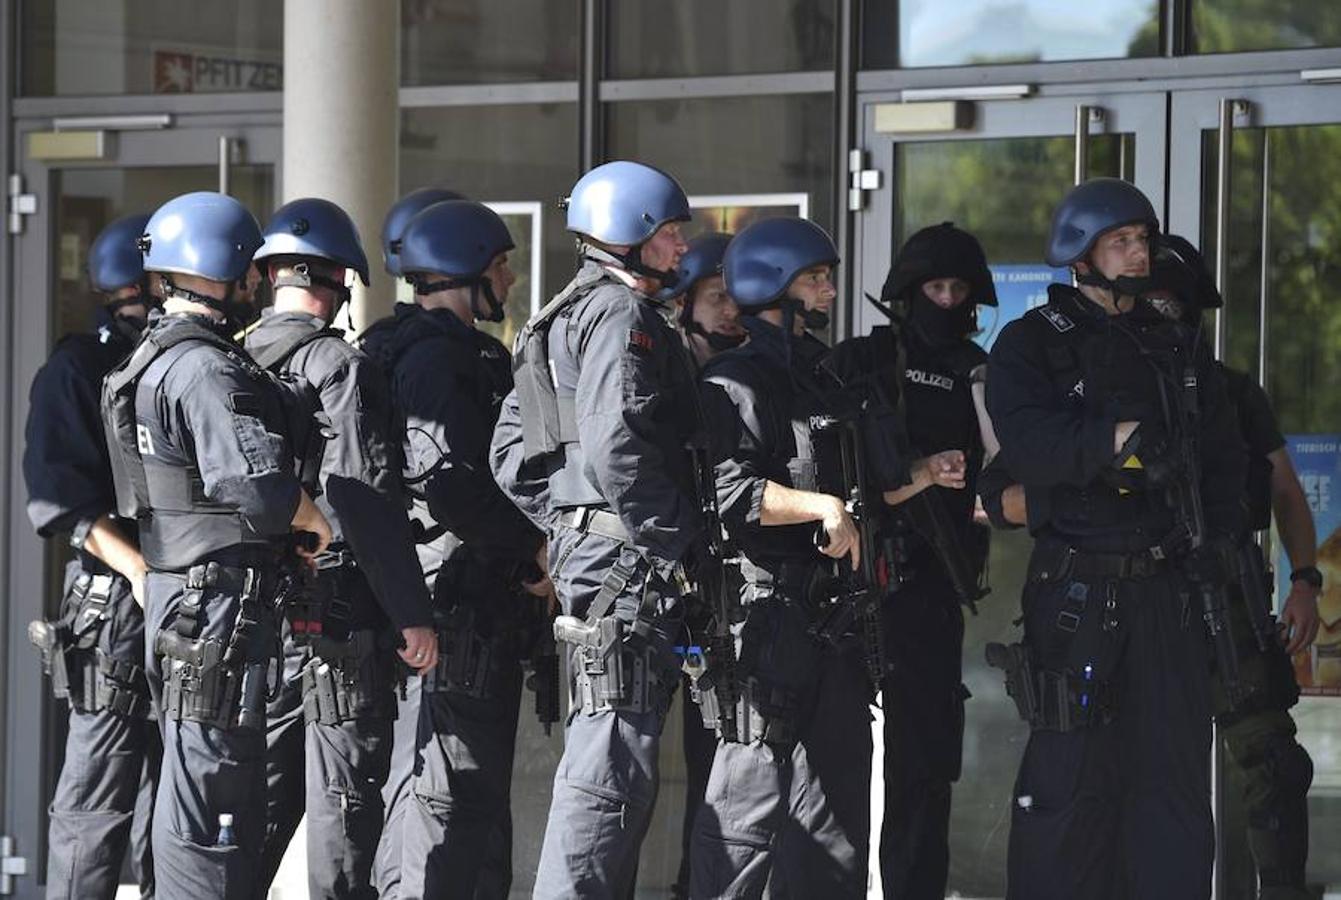 Varios medios alemanes señalan que habría 25 heridos leves por gas lacrimógeno, después de que la policía entrara al cine para reducir al asaltante, que había tomado rehenes